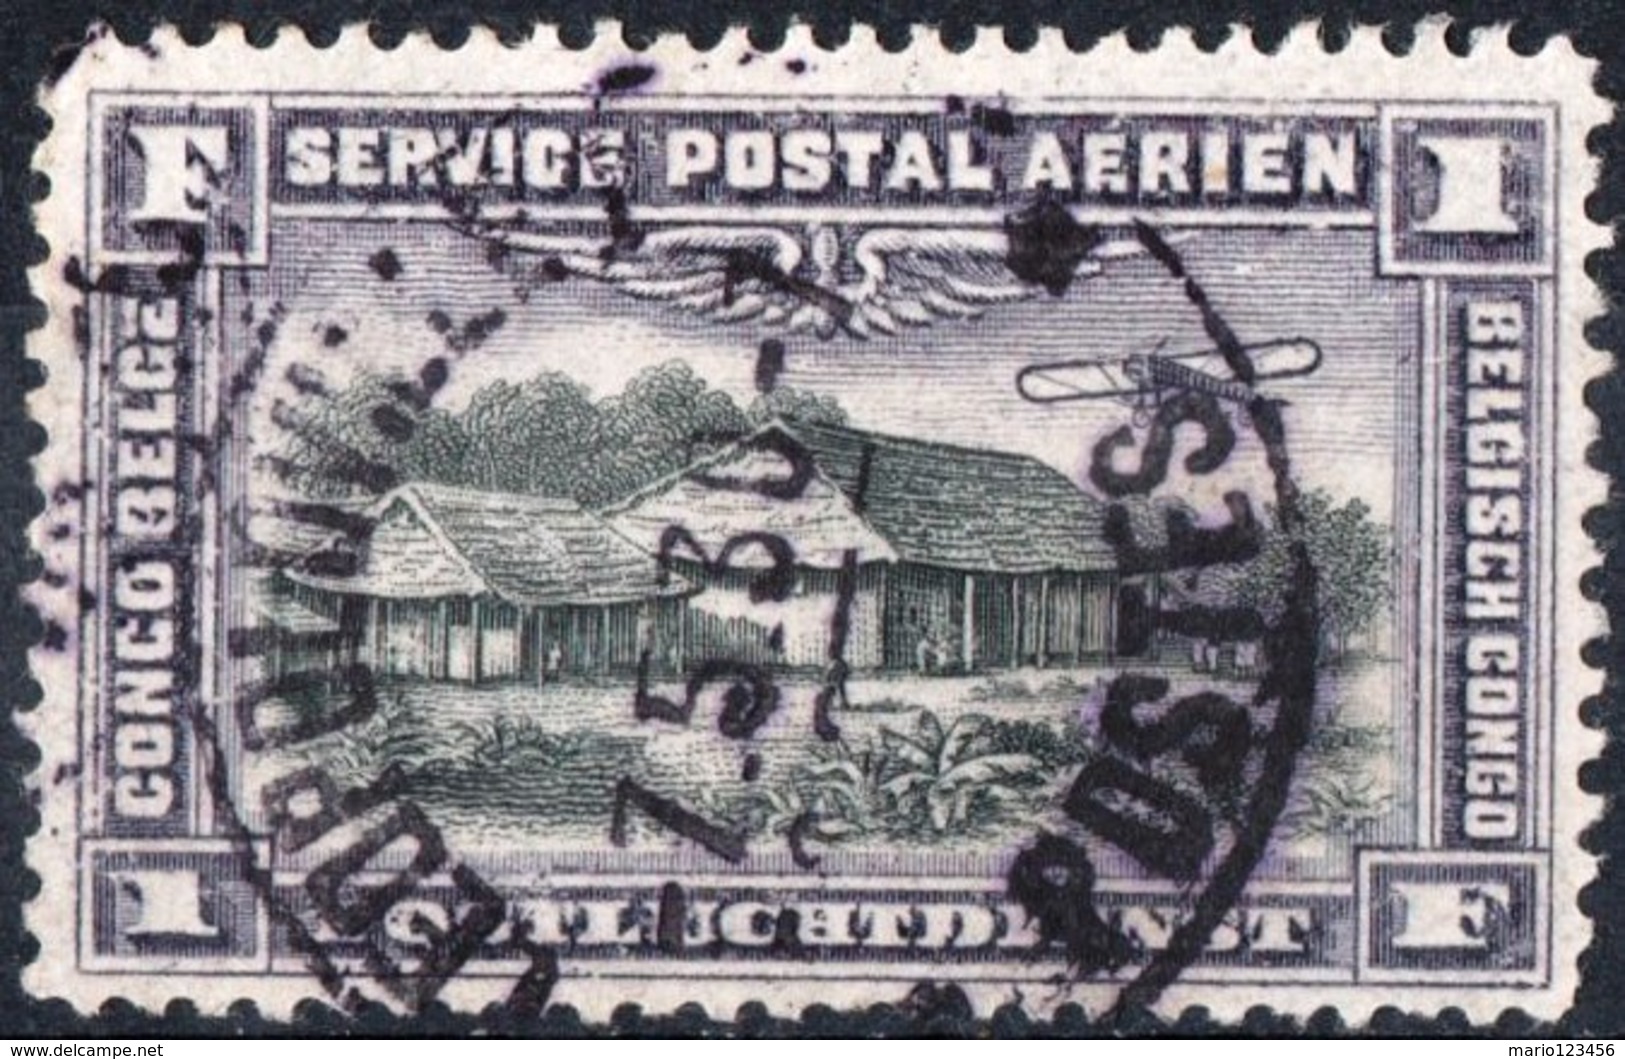 CONGO BELGA, BELGIAN CONGO, COLONIA BELGA, POSTA AEREA, AIRMAIL, 1934,  USATO Michel 43   Scott C2 - Oblitérés